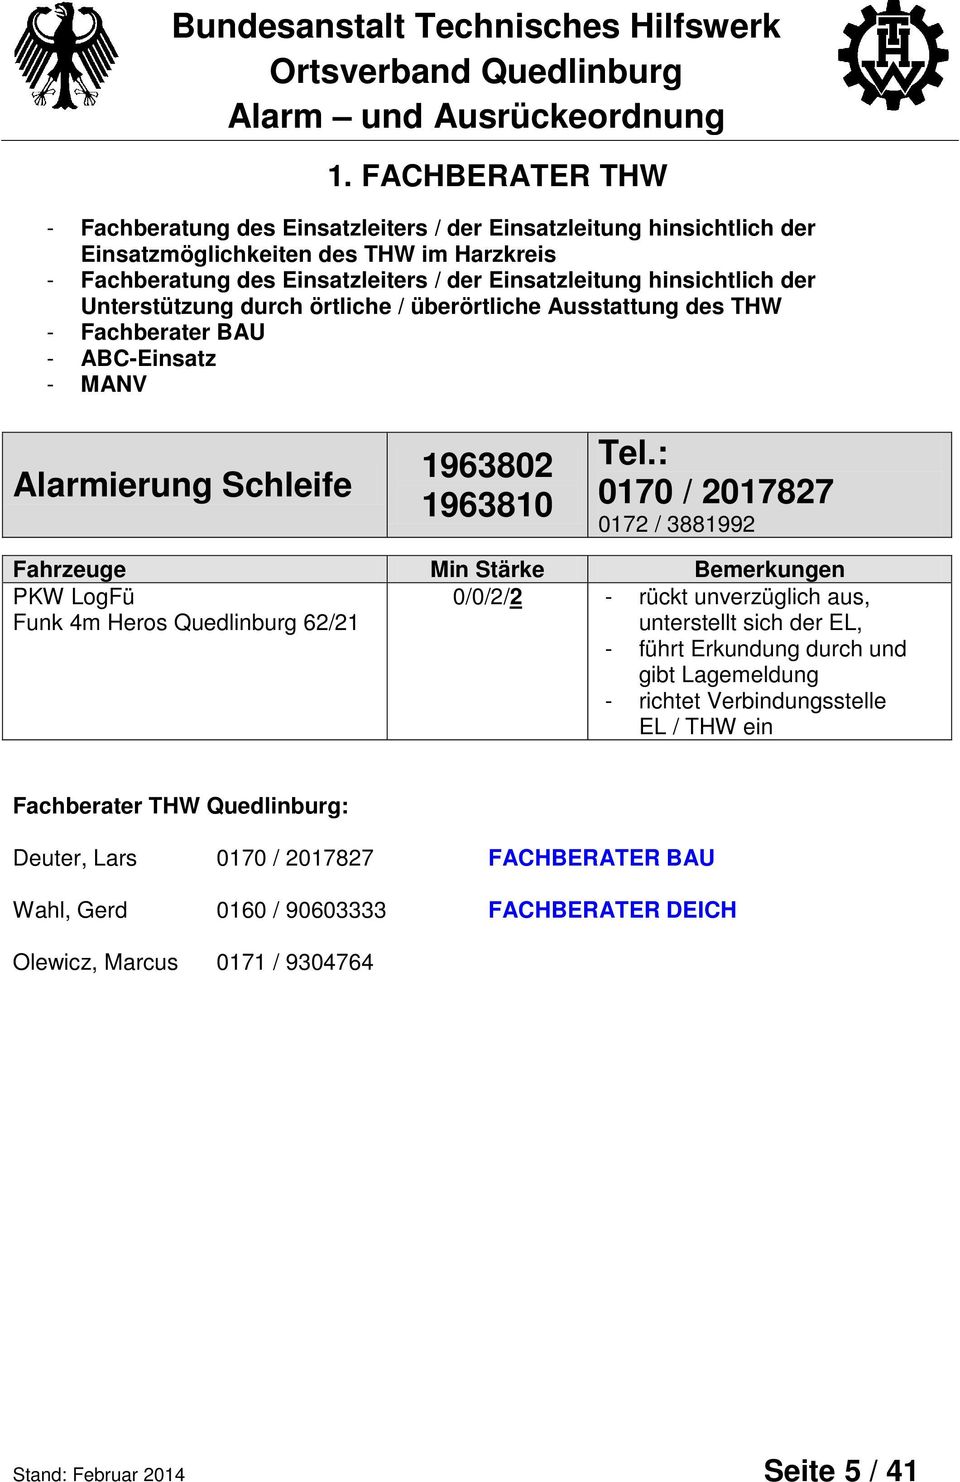 : 0170 / 2017827 0172 / 3881992 Fahrzeuge Min Stärke Bemerkungen PKW LogFü Funk 4m Heros Quedlinburg 62/21 0/0/2/2 - rückt unverzüglich aus, unterstellt sich der EL, - führt Erkundung durch